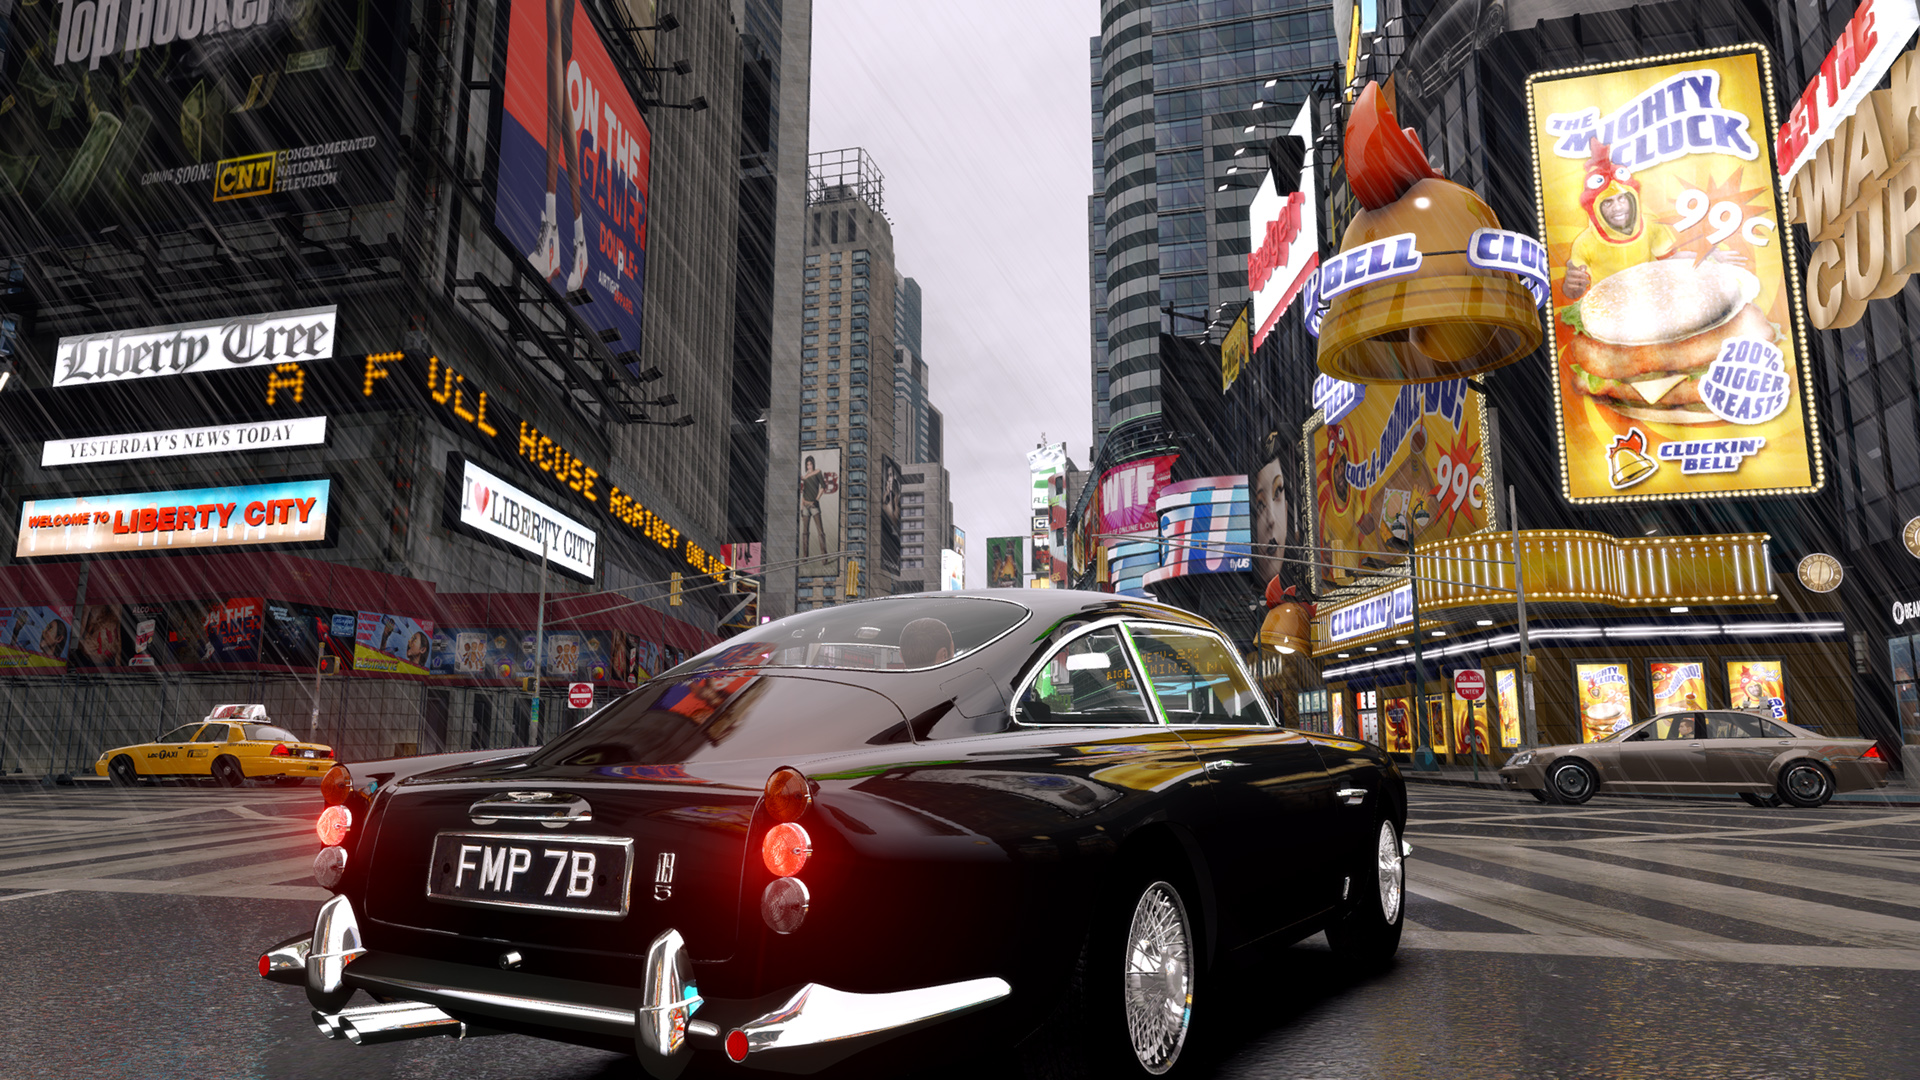 GTA 4 looks absolutely stunning at 4K